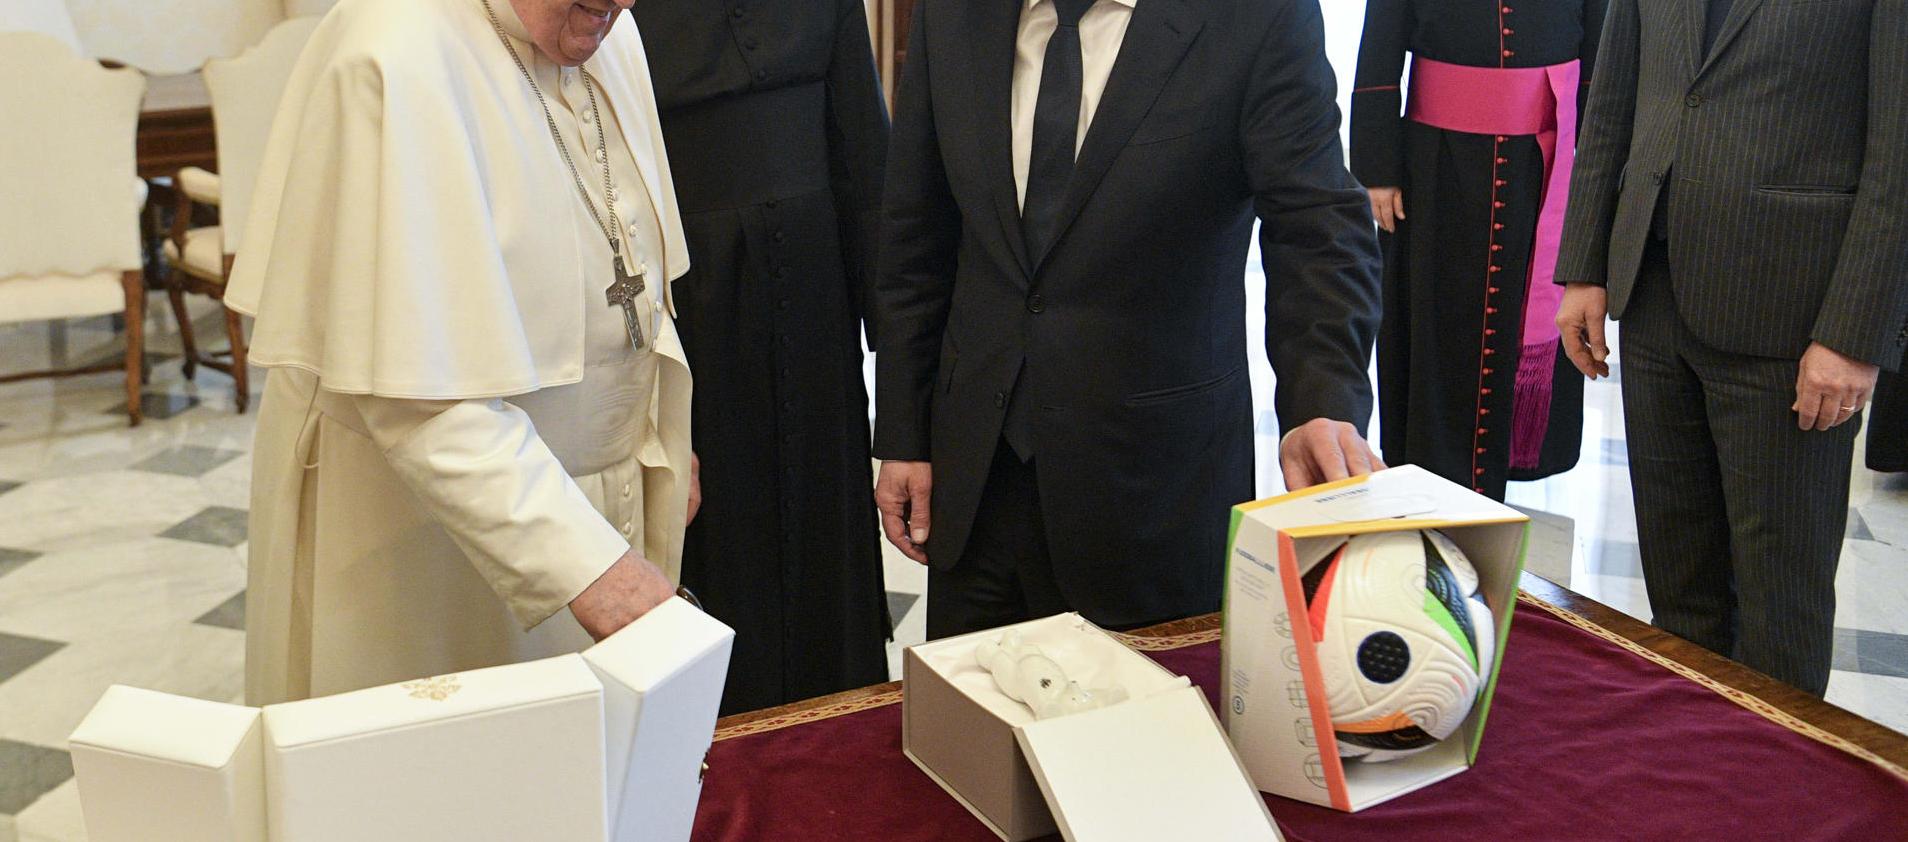 El Papa recibió hoy al canciller alemán, Olaf Scholz, quien le regaló el balón oficial de la Eurocopa.